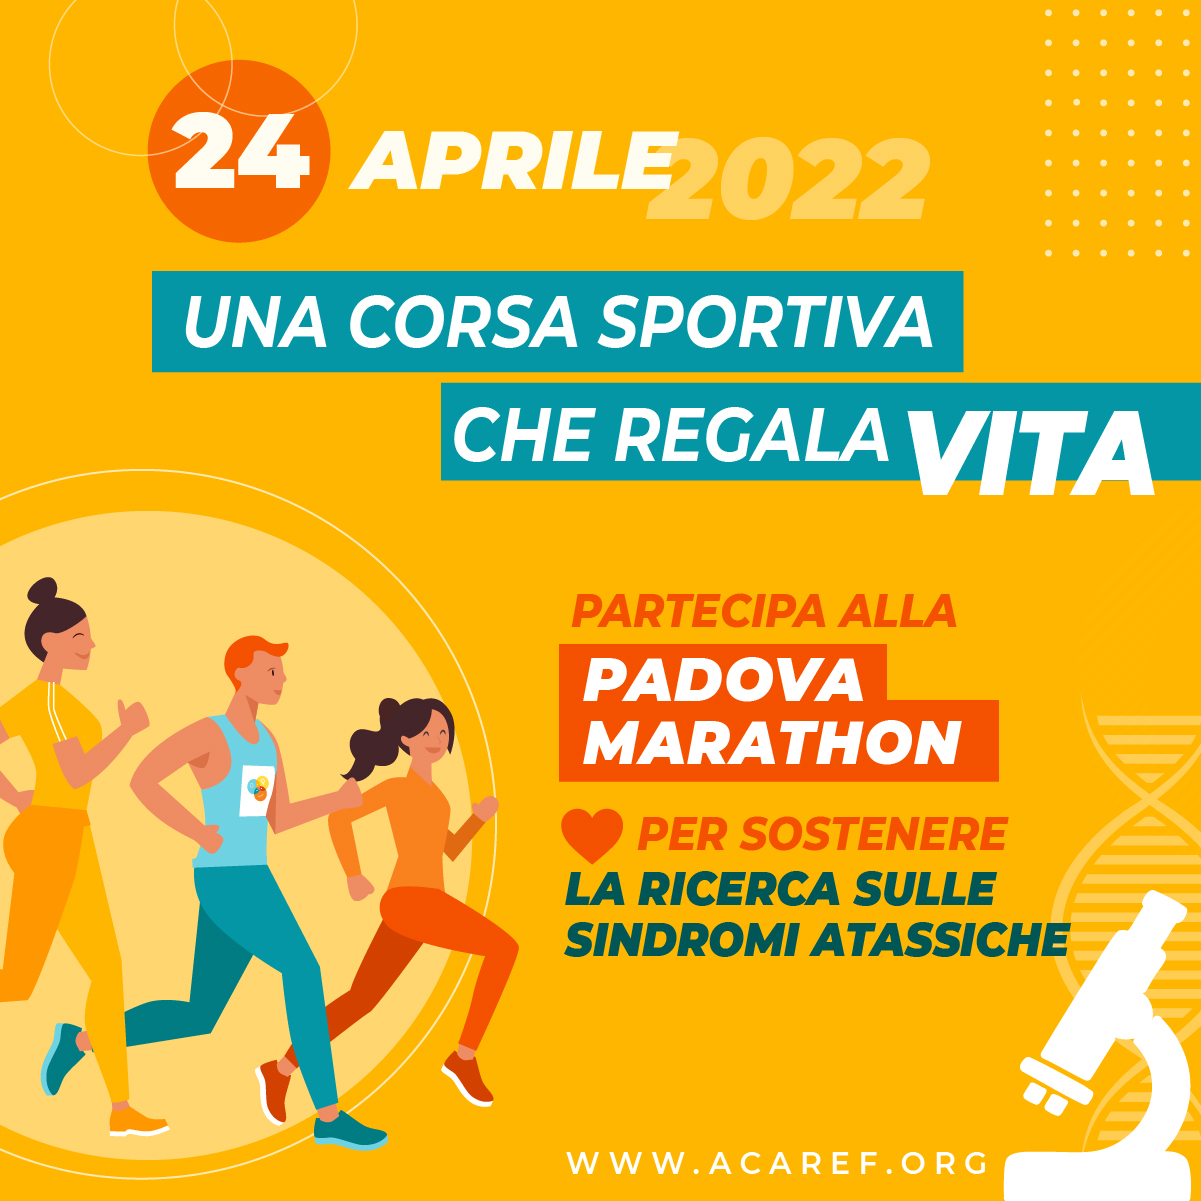 Una corsa sportiva che regala vita-Fondazione ACAREF